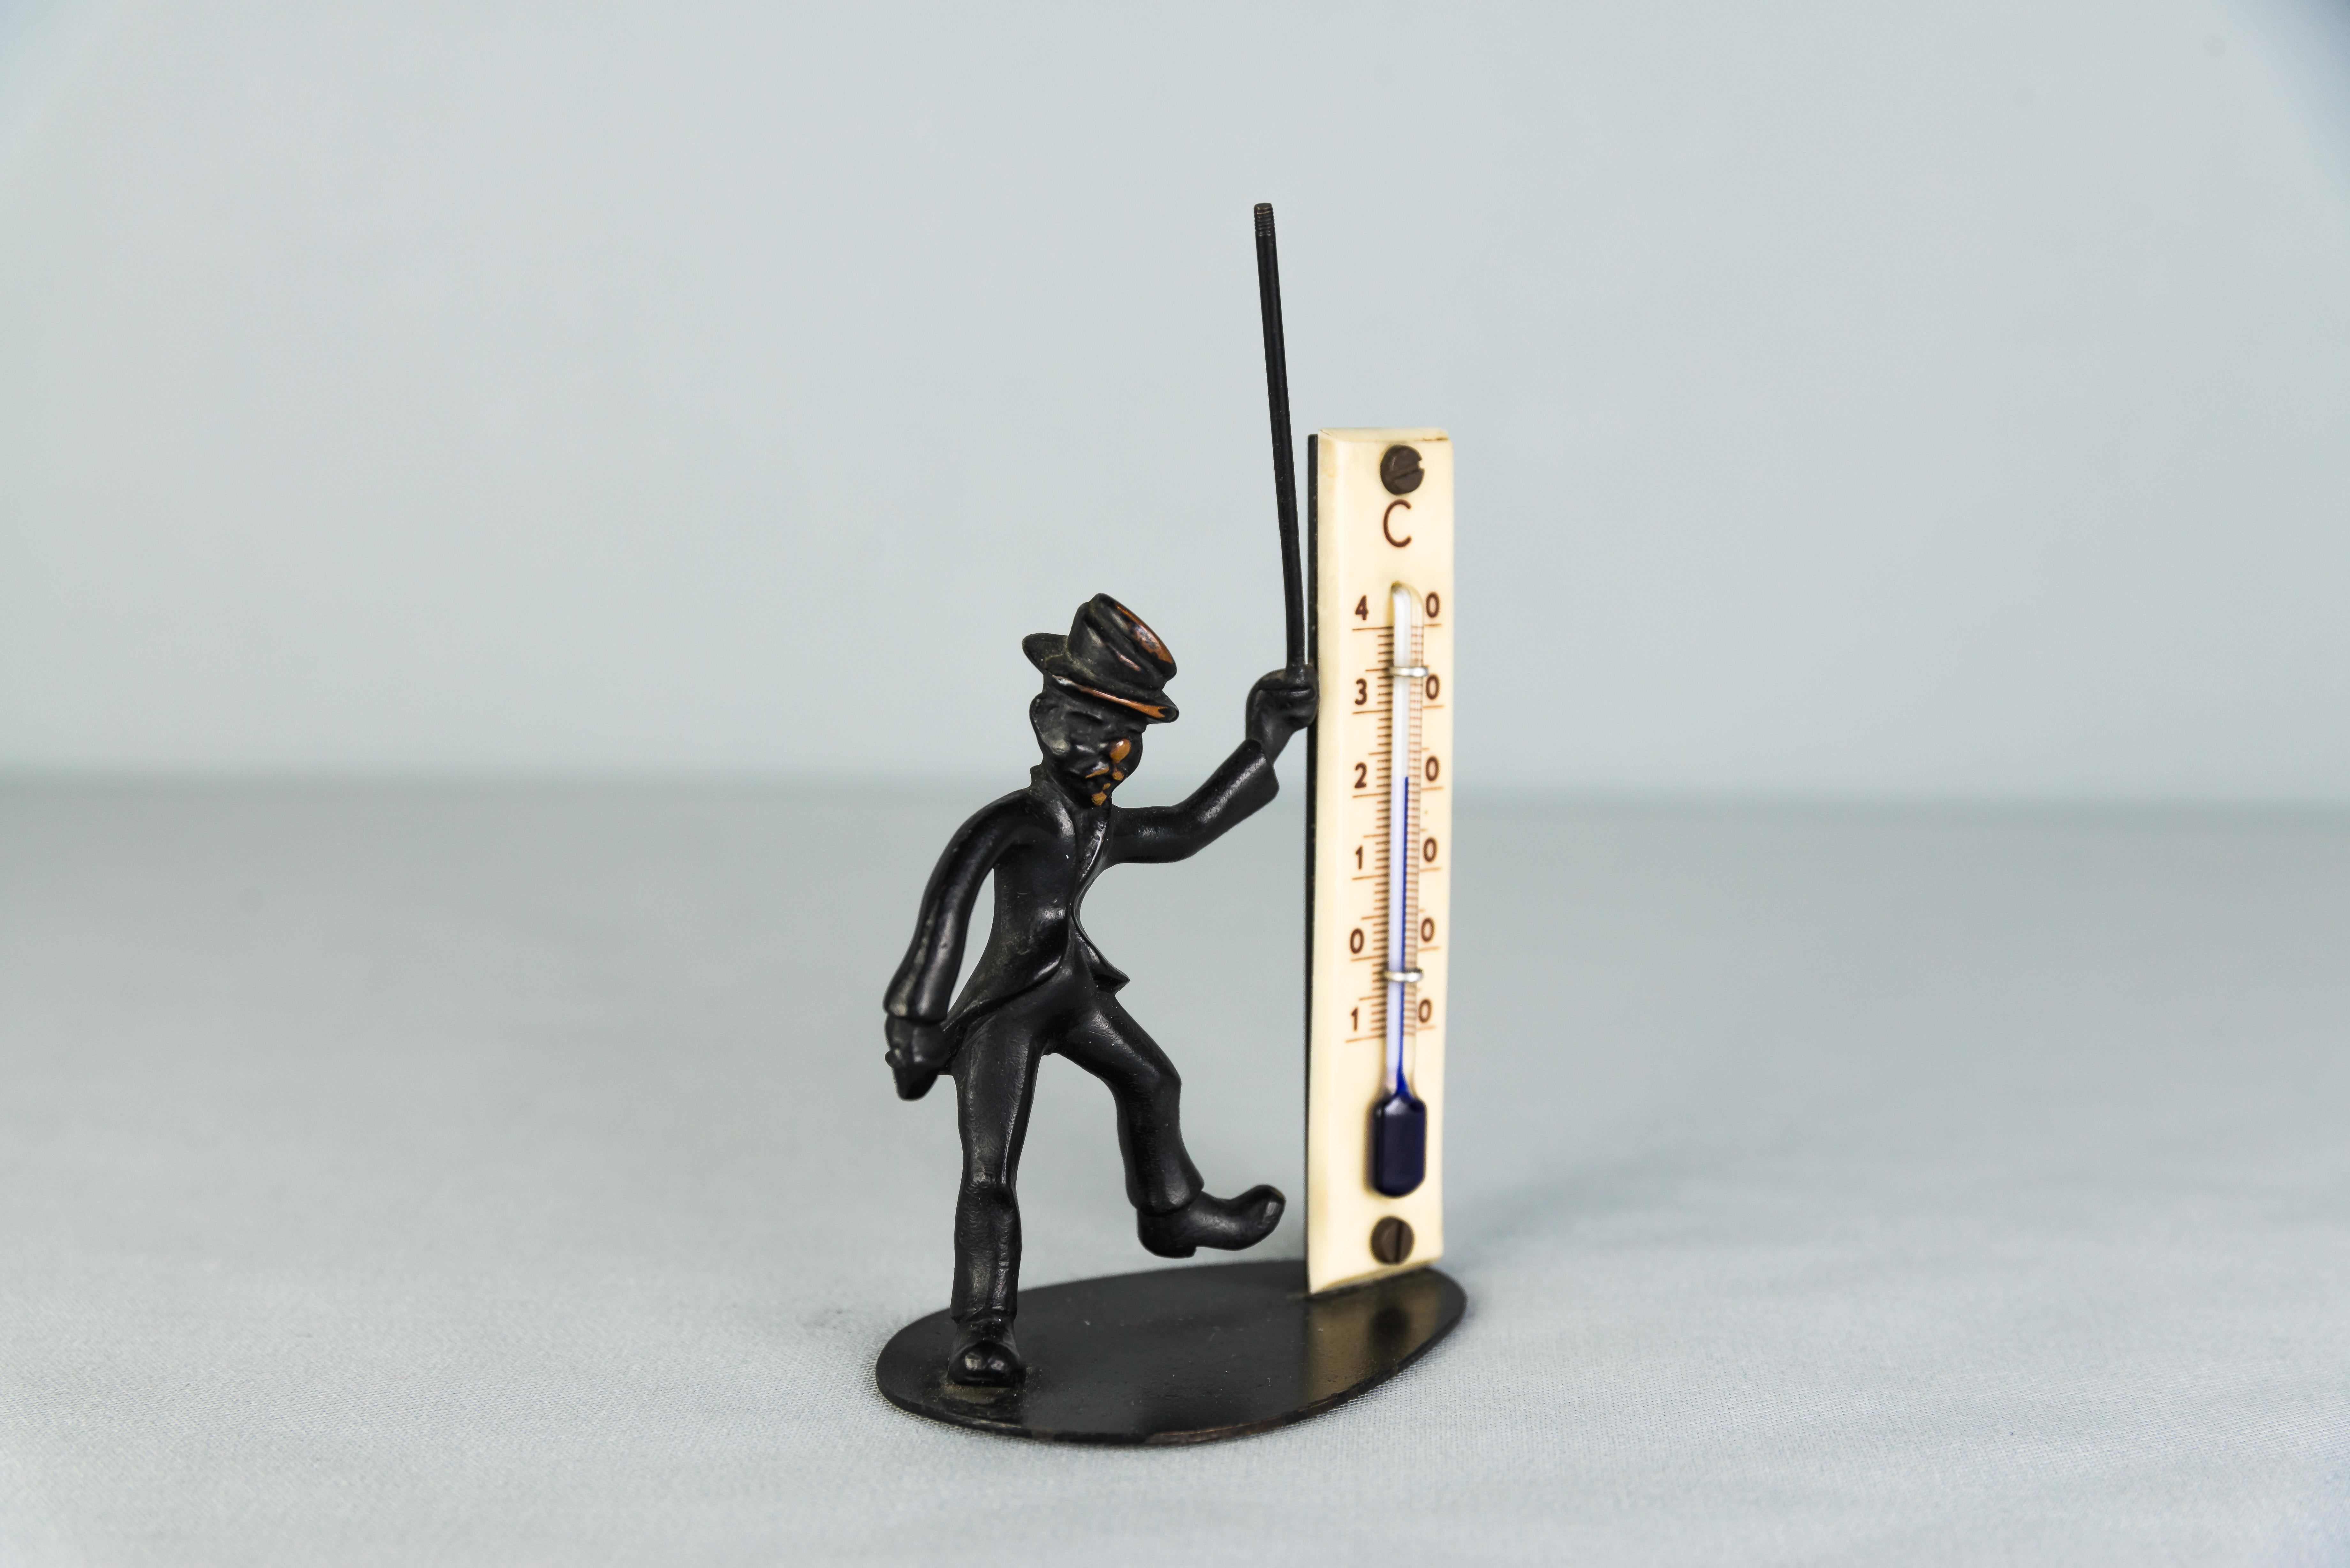 Walter Bosse thermometer, circa 1950s
Original condition.